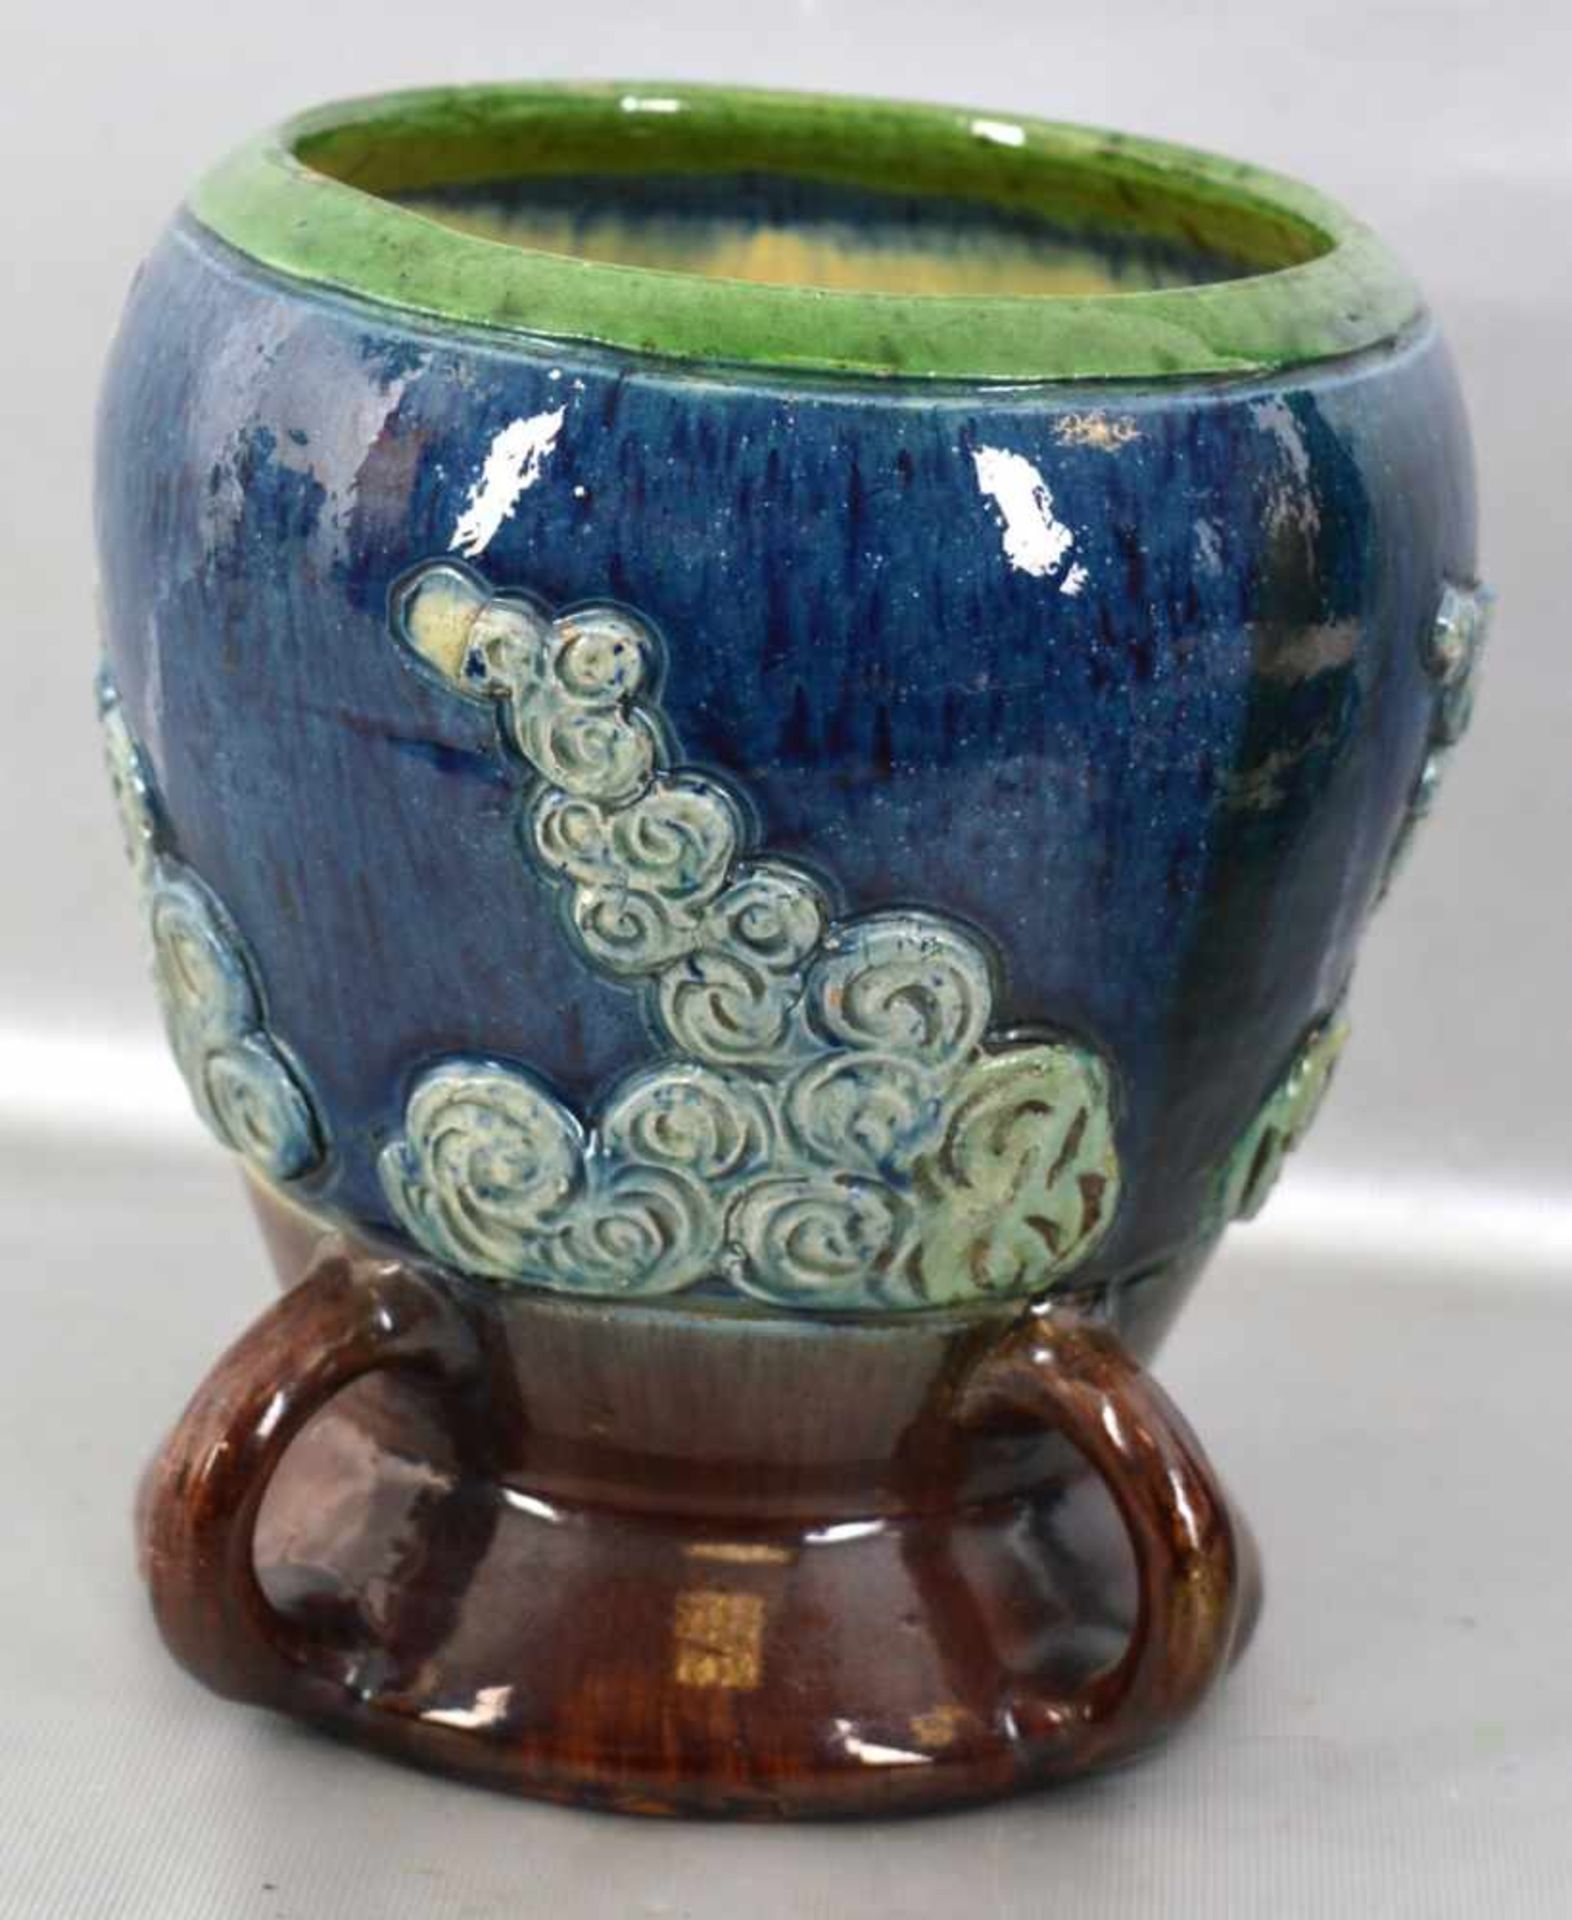 Vase rund, verzierter Fuß, grün/blauer Rand, Wandung mit plastischen Ornamenten verziert, H 19 cm,